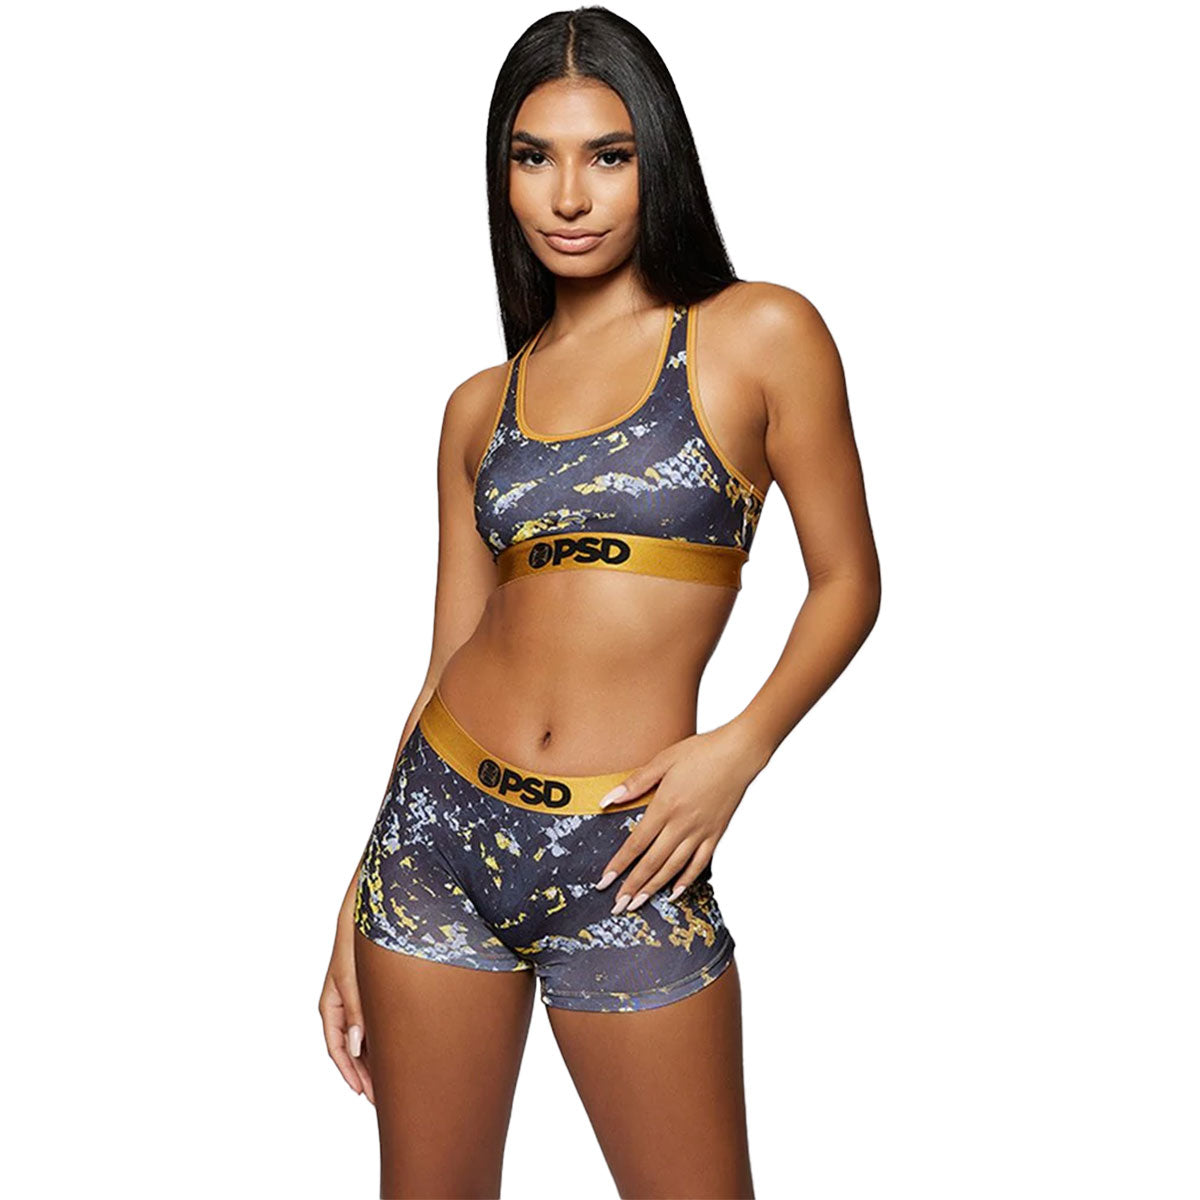 PSD Golden Scales Sports Bra Women's Top Underwear (Refurbished) –